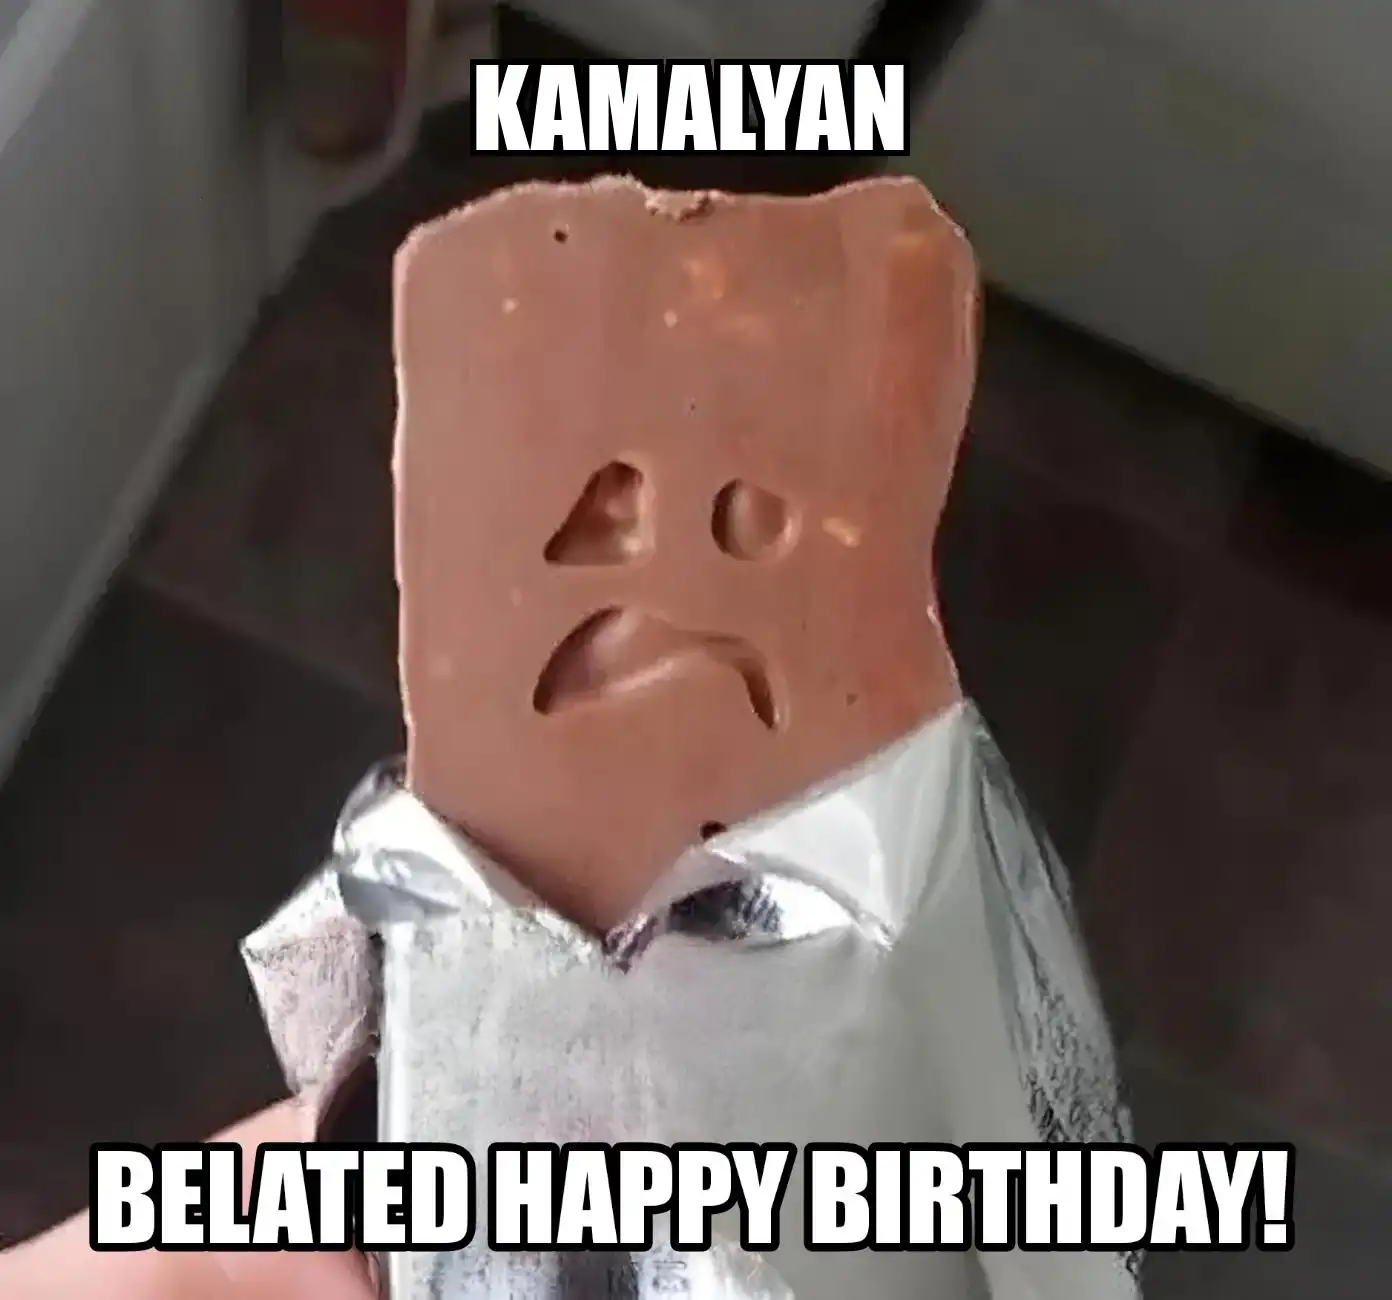 Happy Birthday Kamalyan Belated Happy Birthday Meme